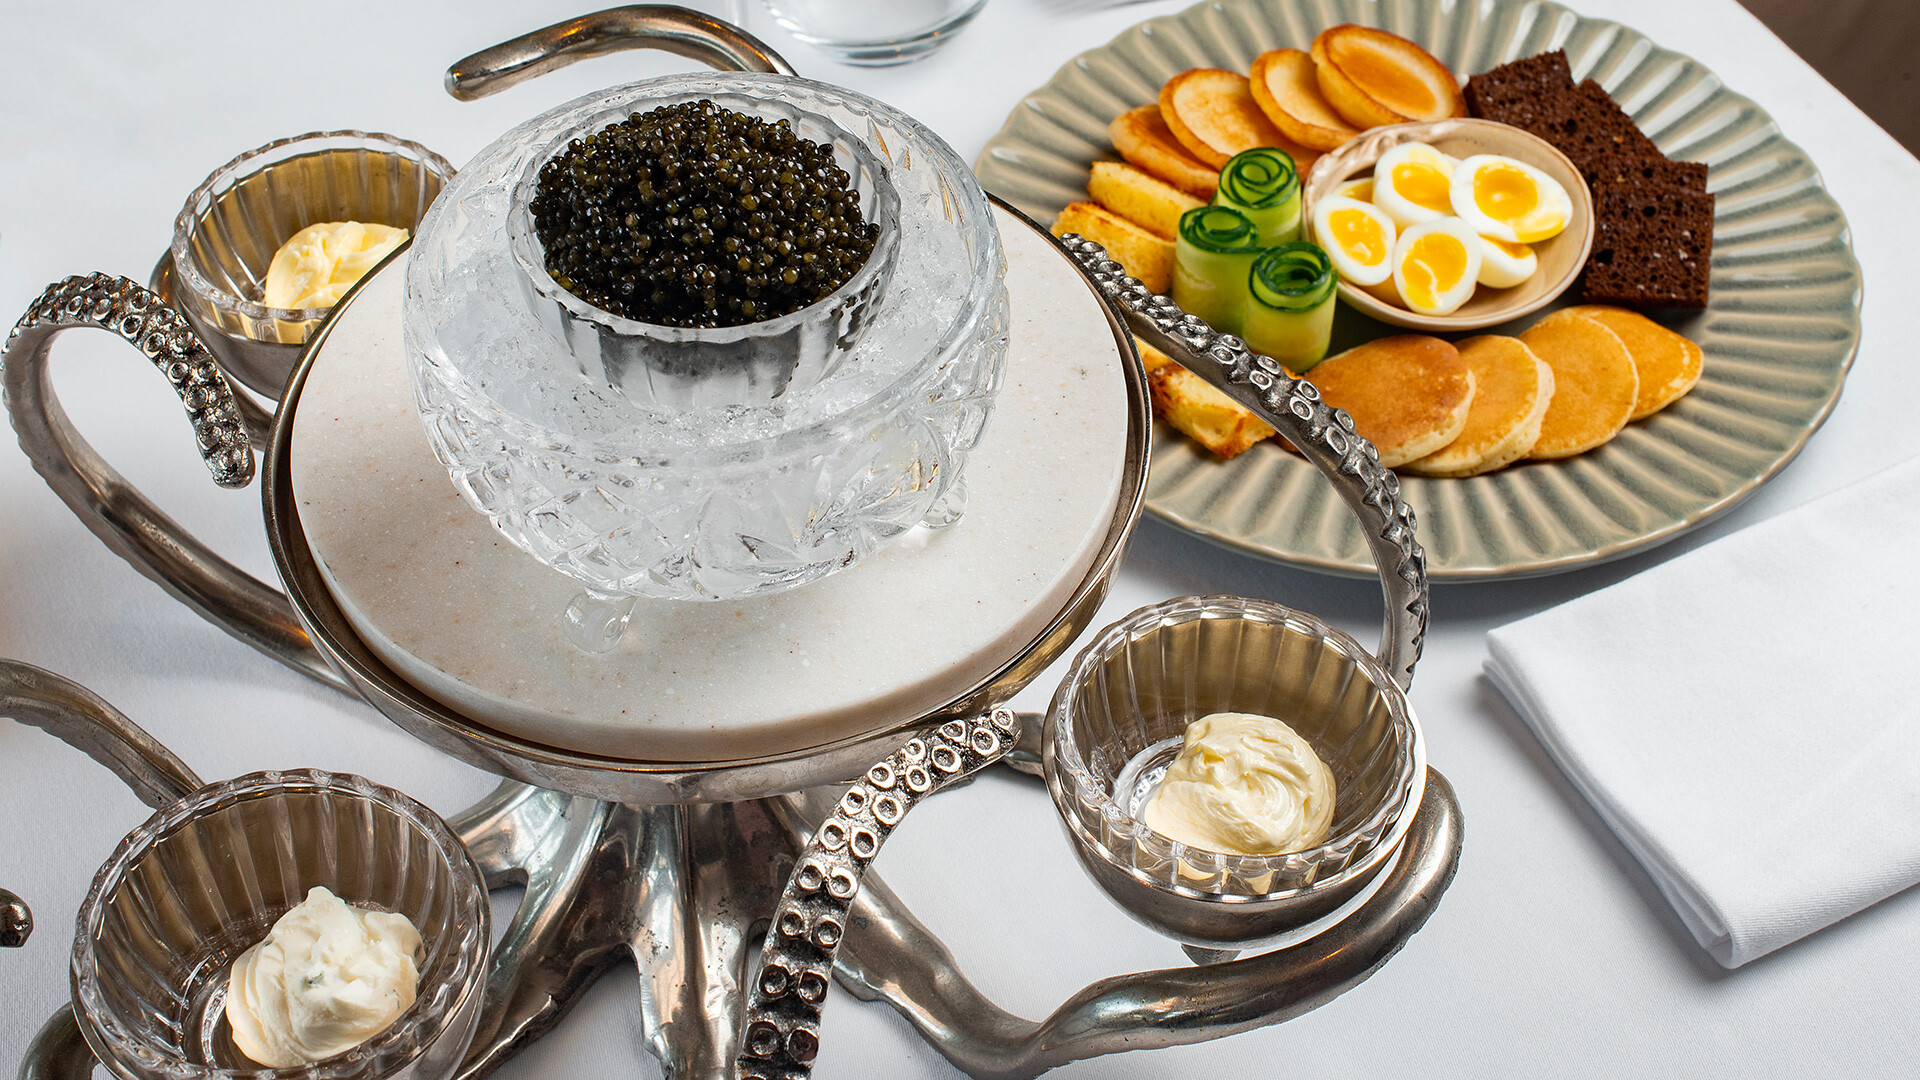 Caviale nero con pancake, pane, uova di quaglia, cetrioli, crema di formaggio e due tipi di burro - classico e al tartufo - serviti nel ristornate "London" di Sochi